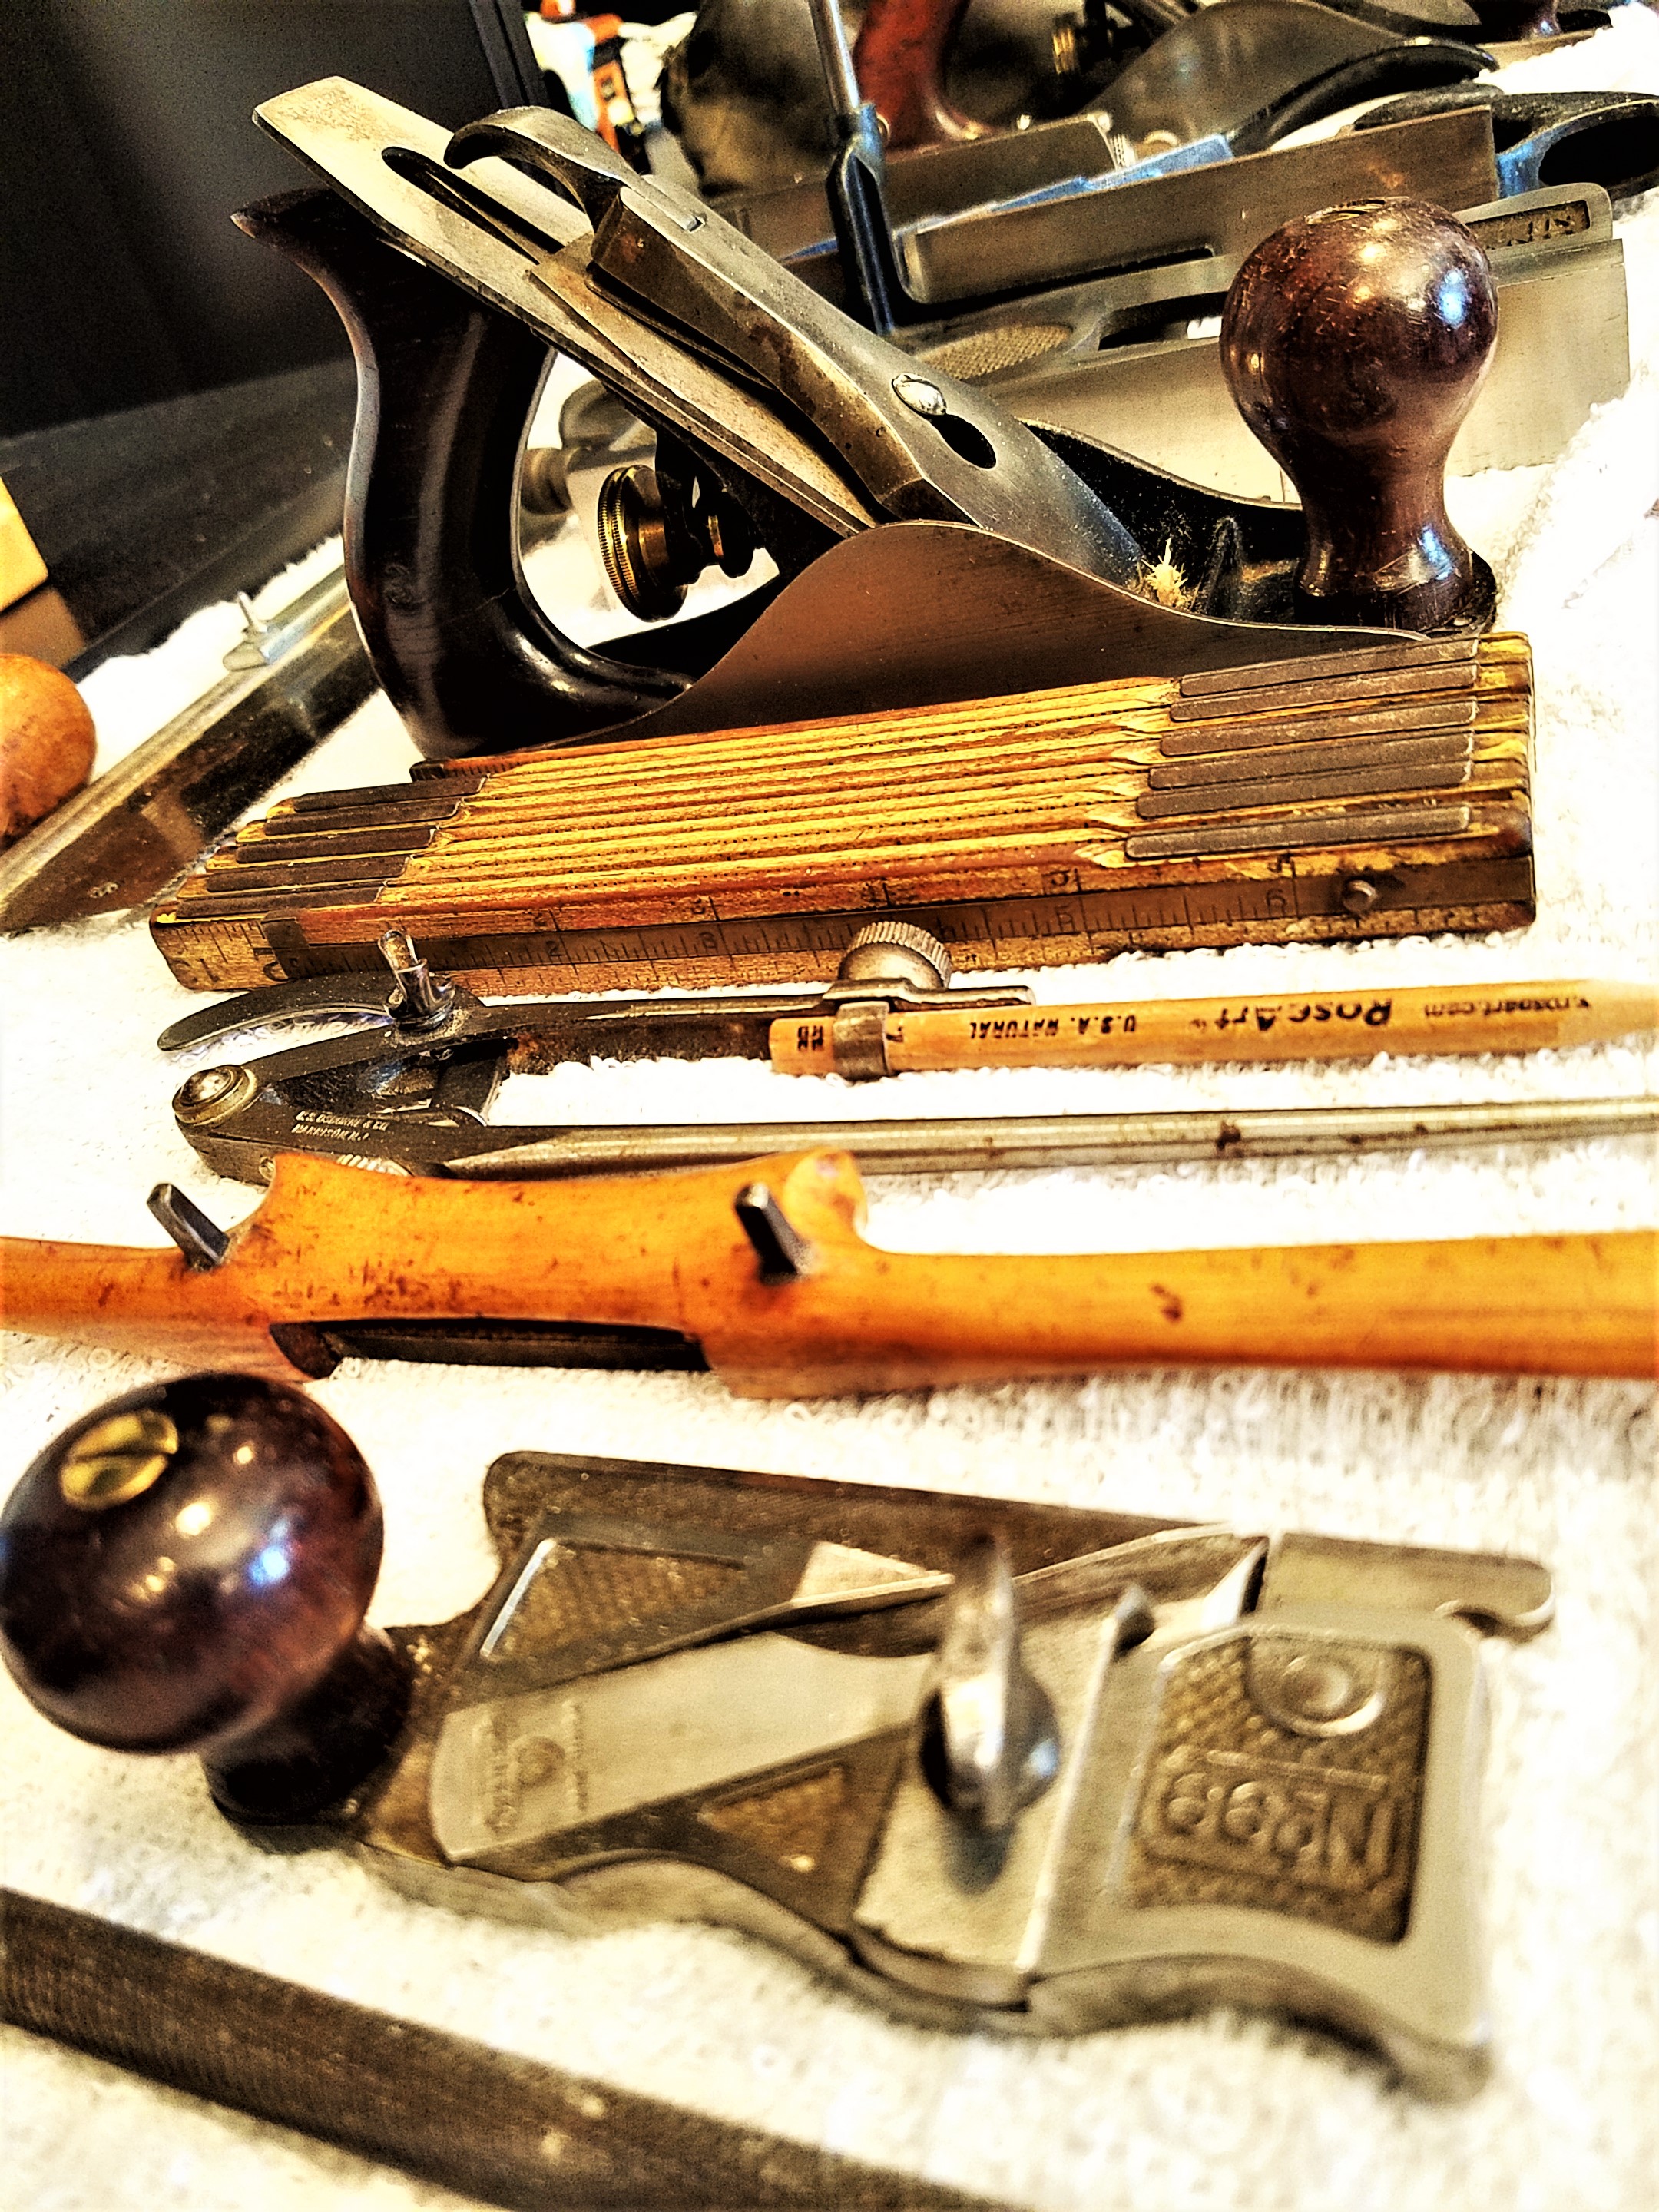  used wood working tools